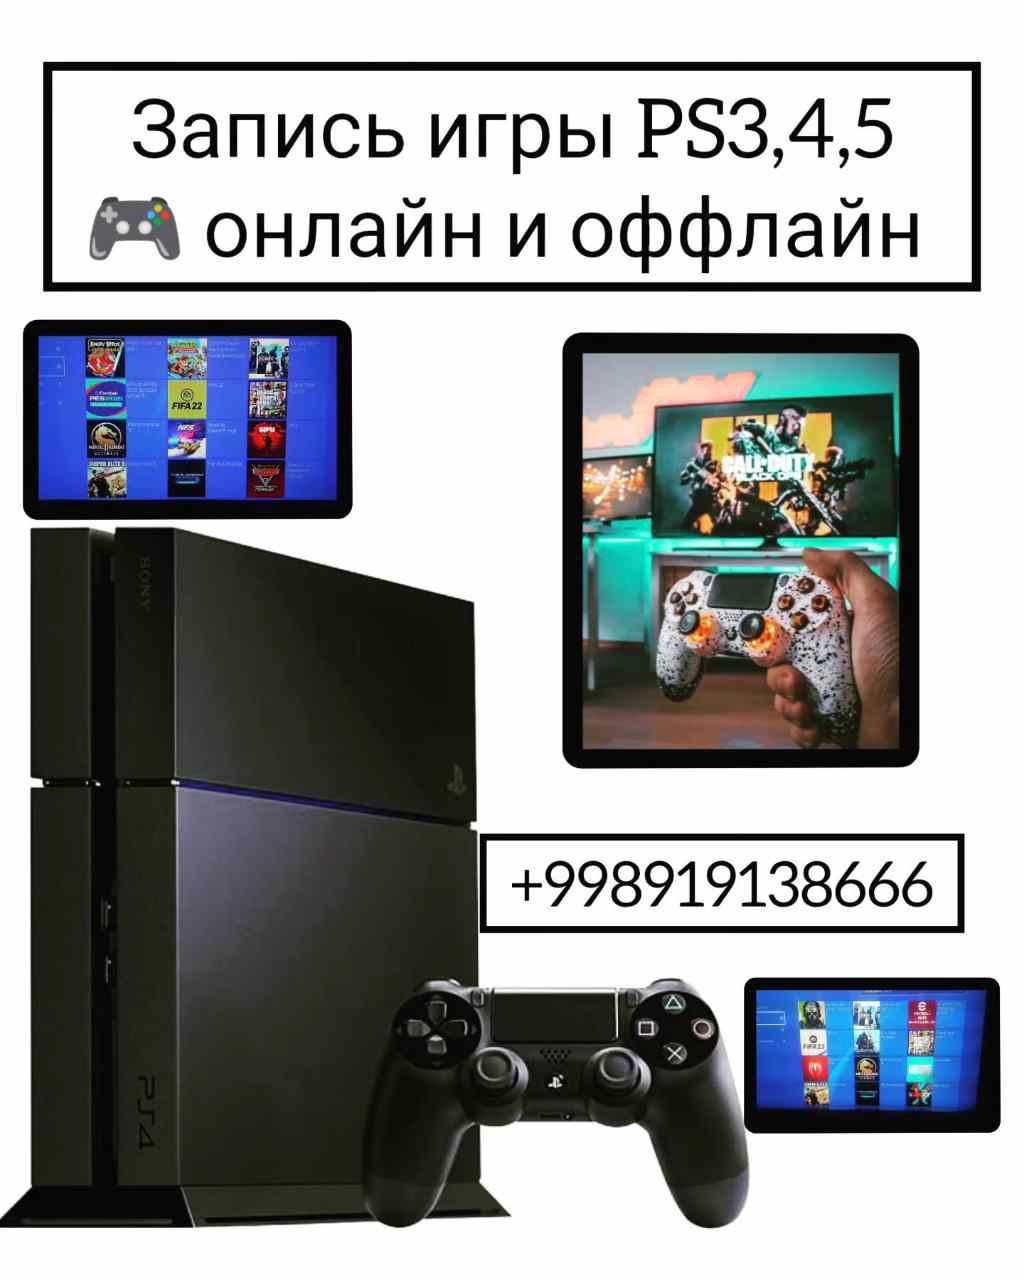 Playstation 3,4,5 laga oʻyin yoziberamiz garantiyali